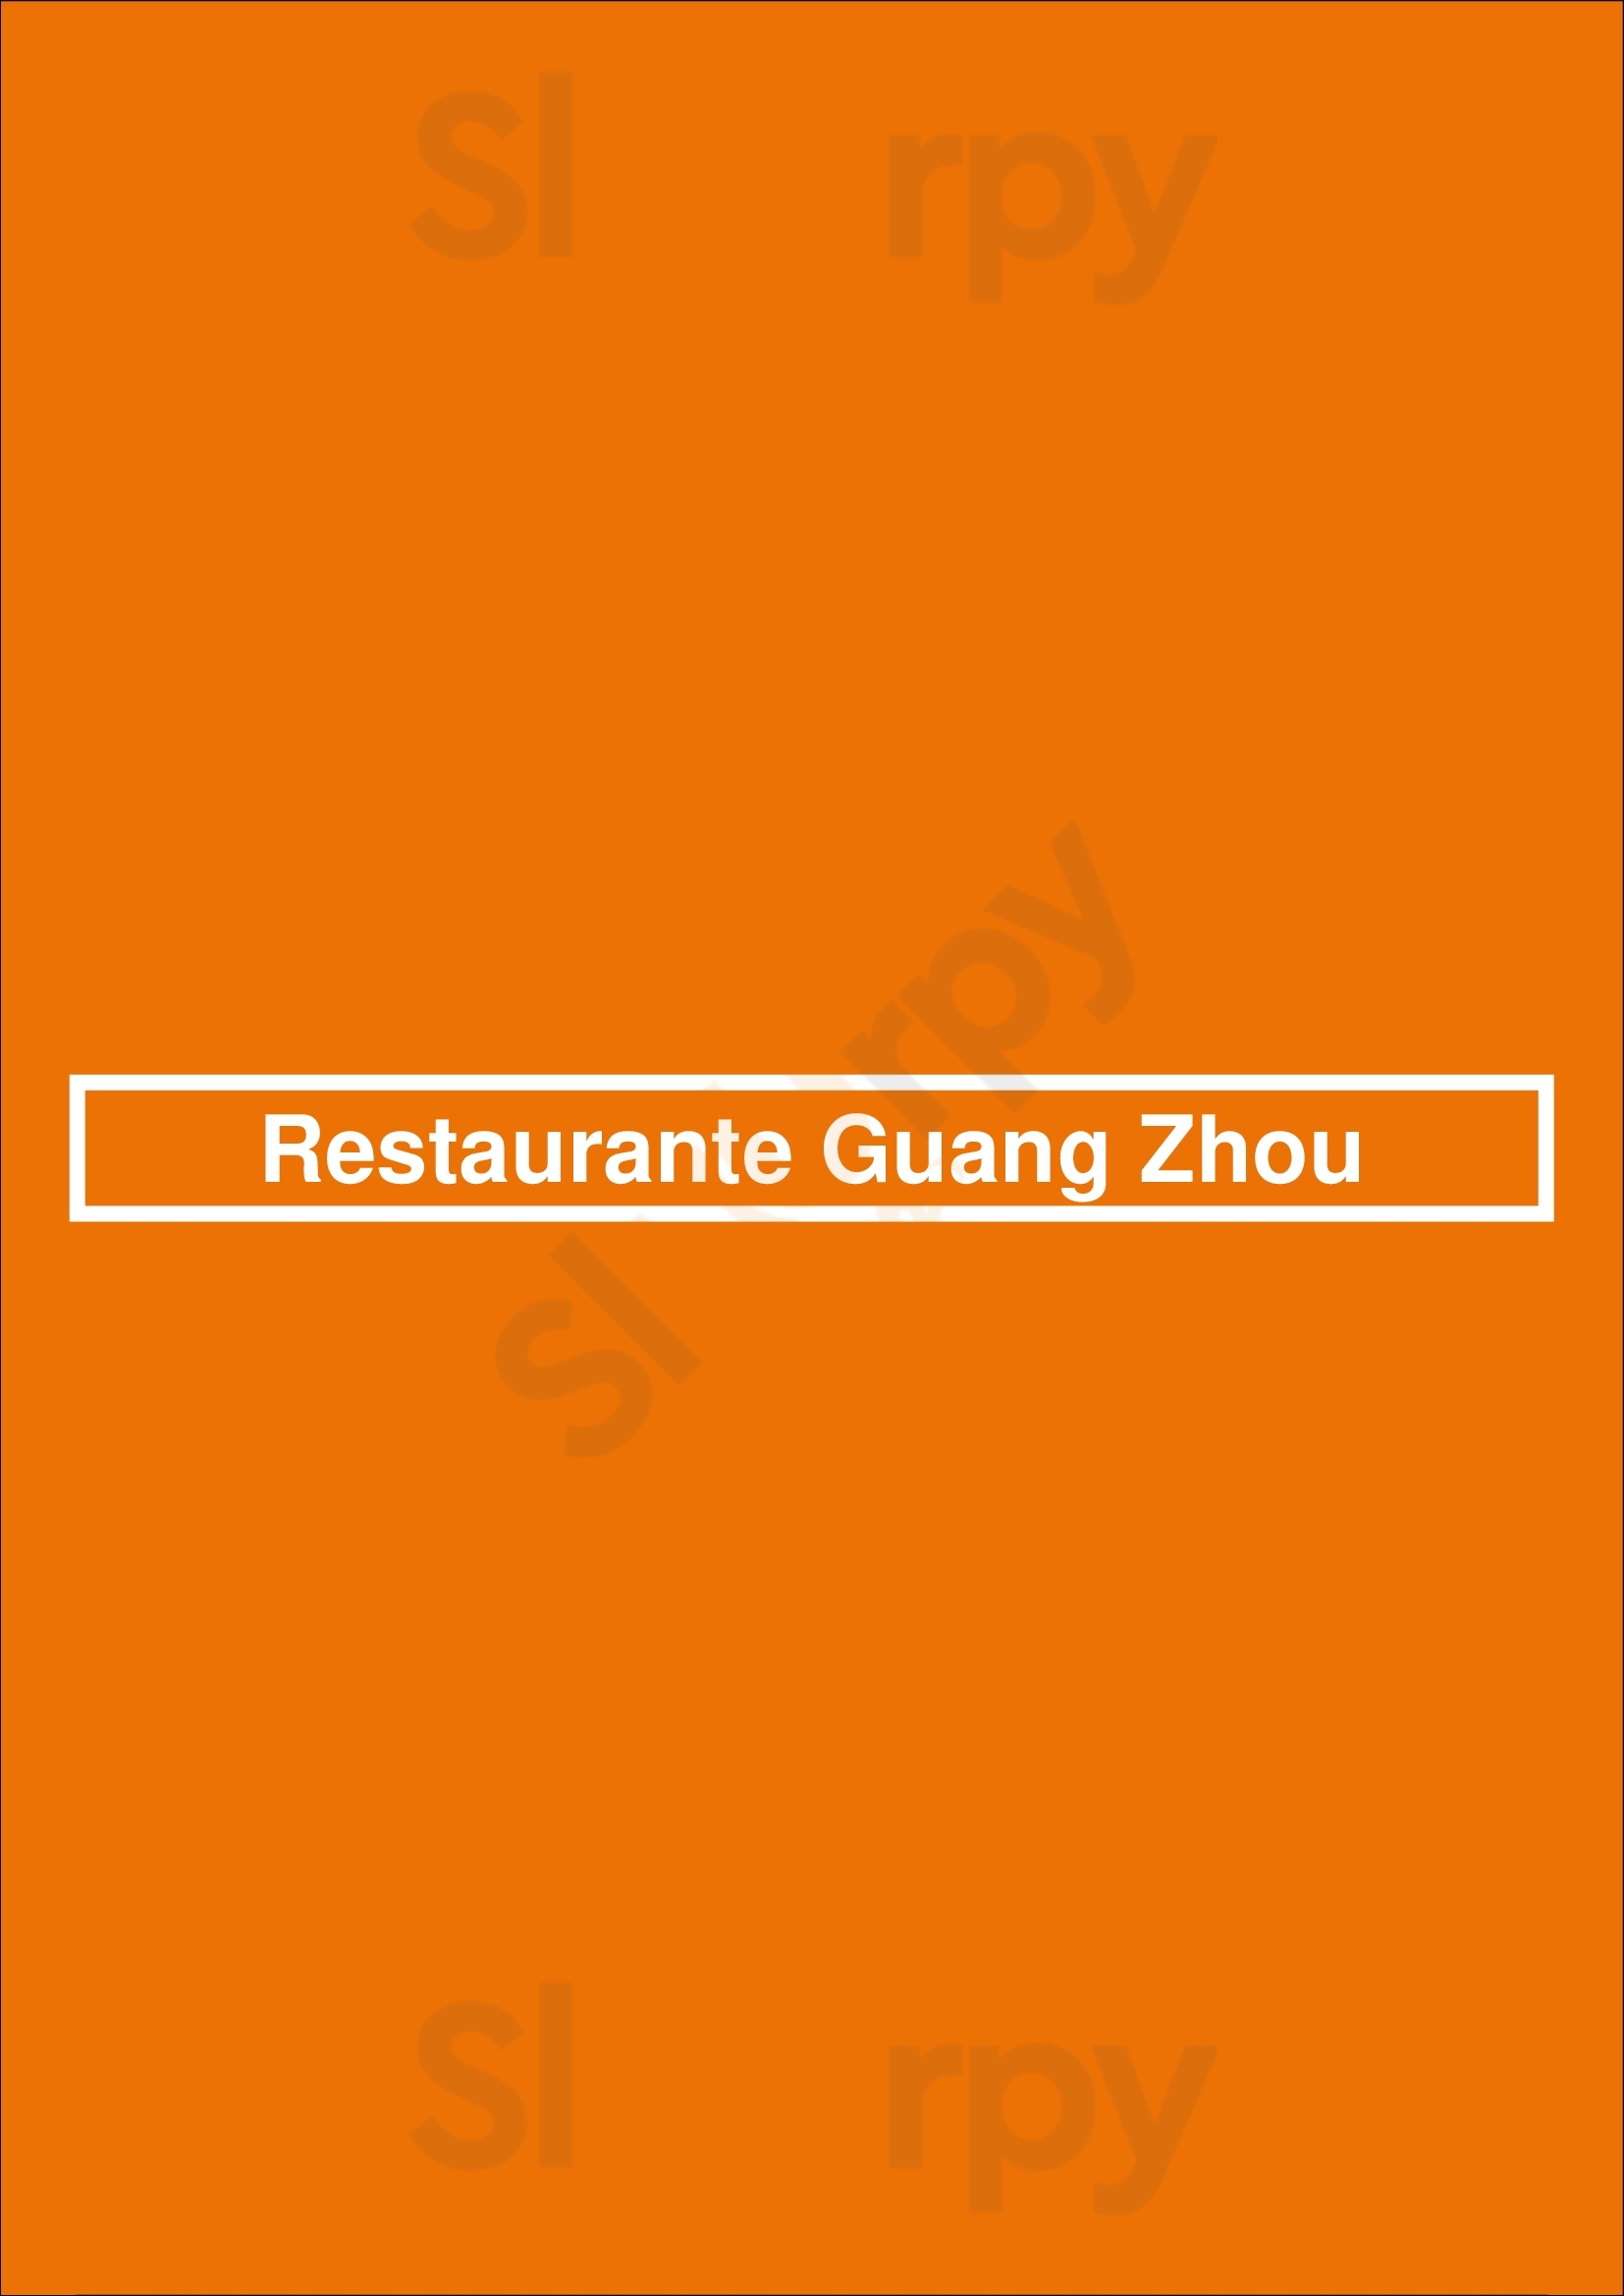 Restaurante Guang Zhou Madrid Menu - 1